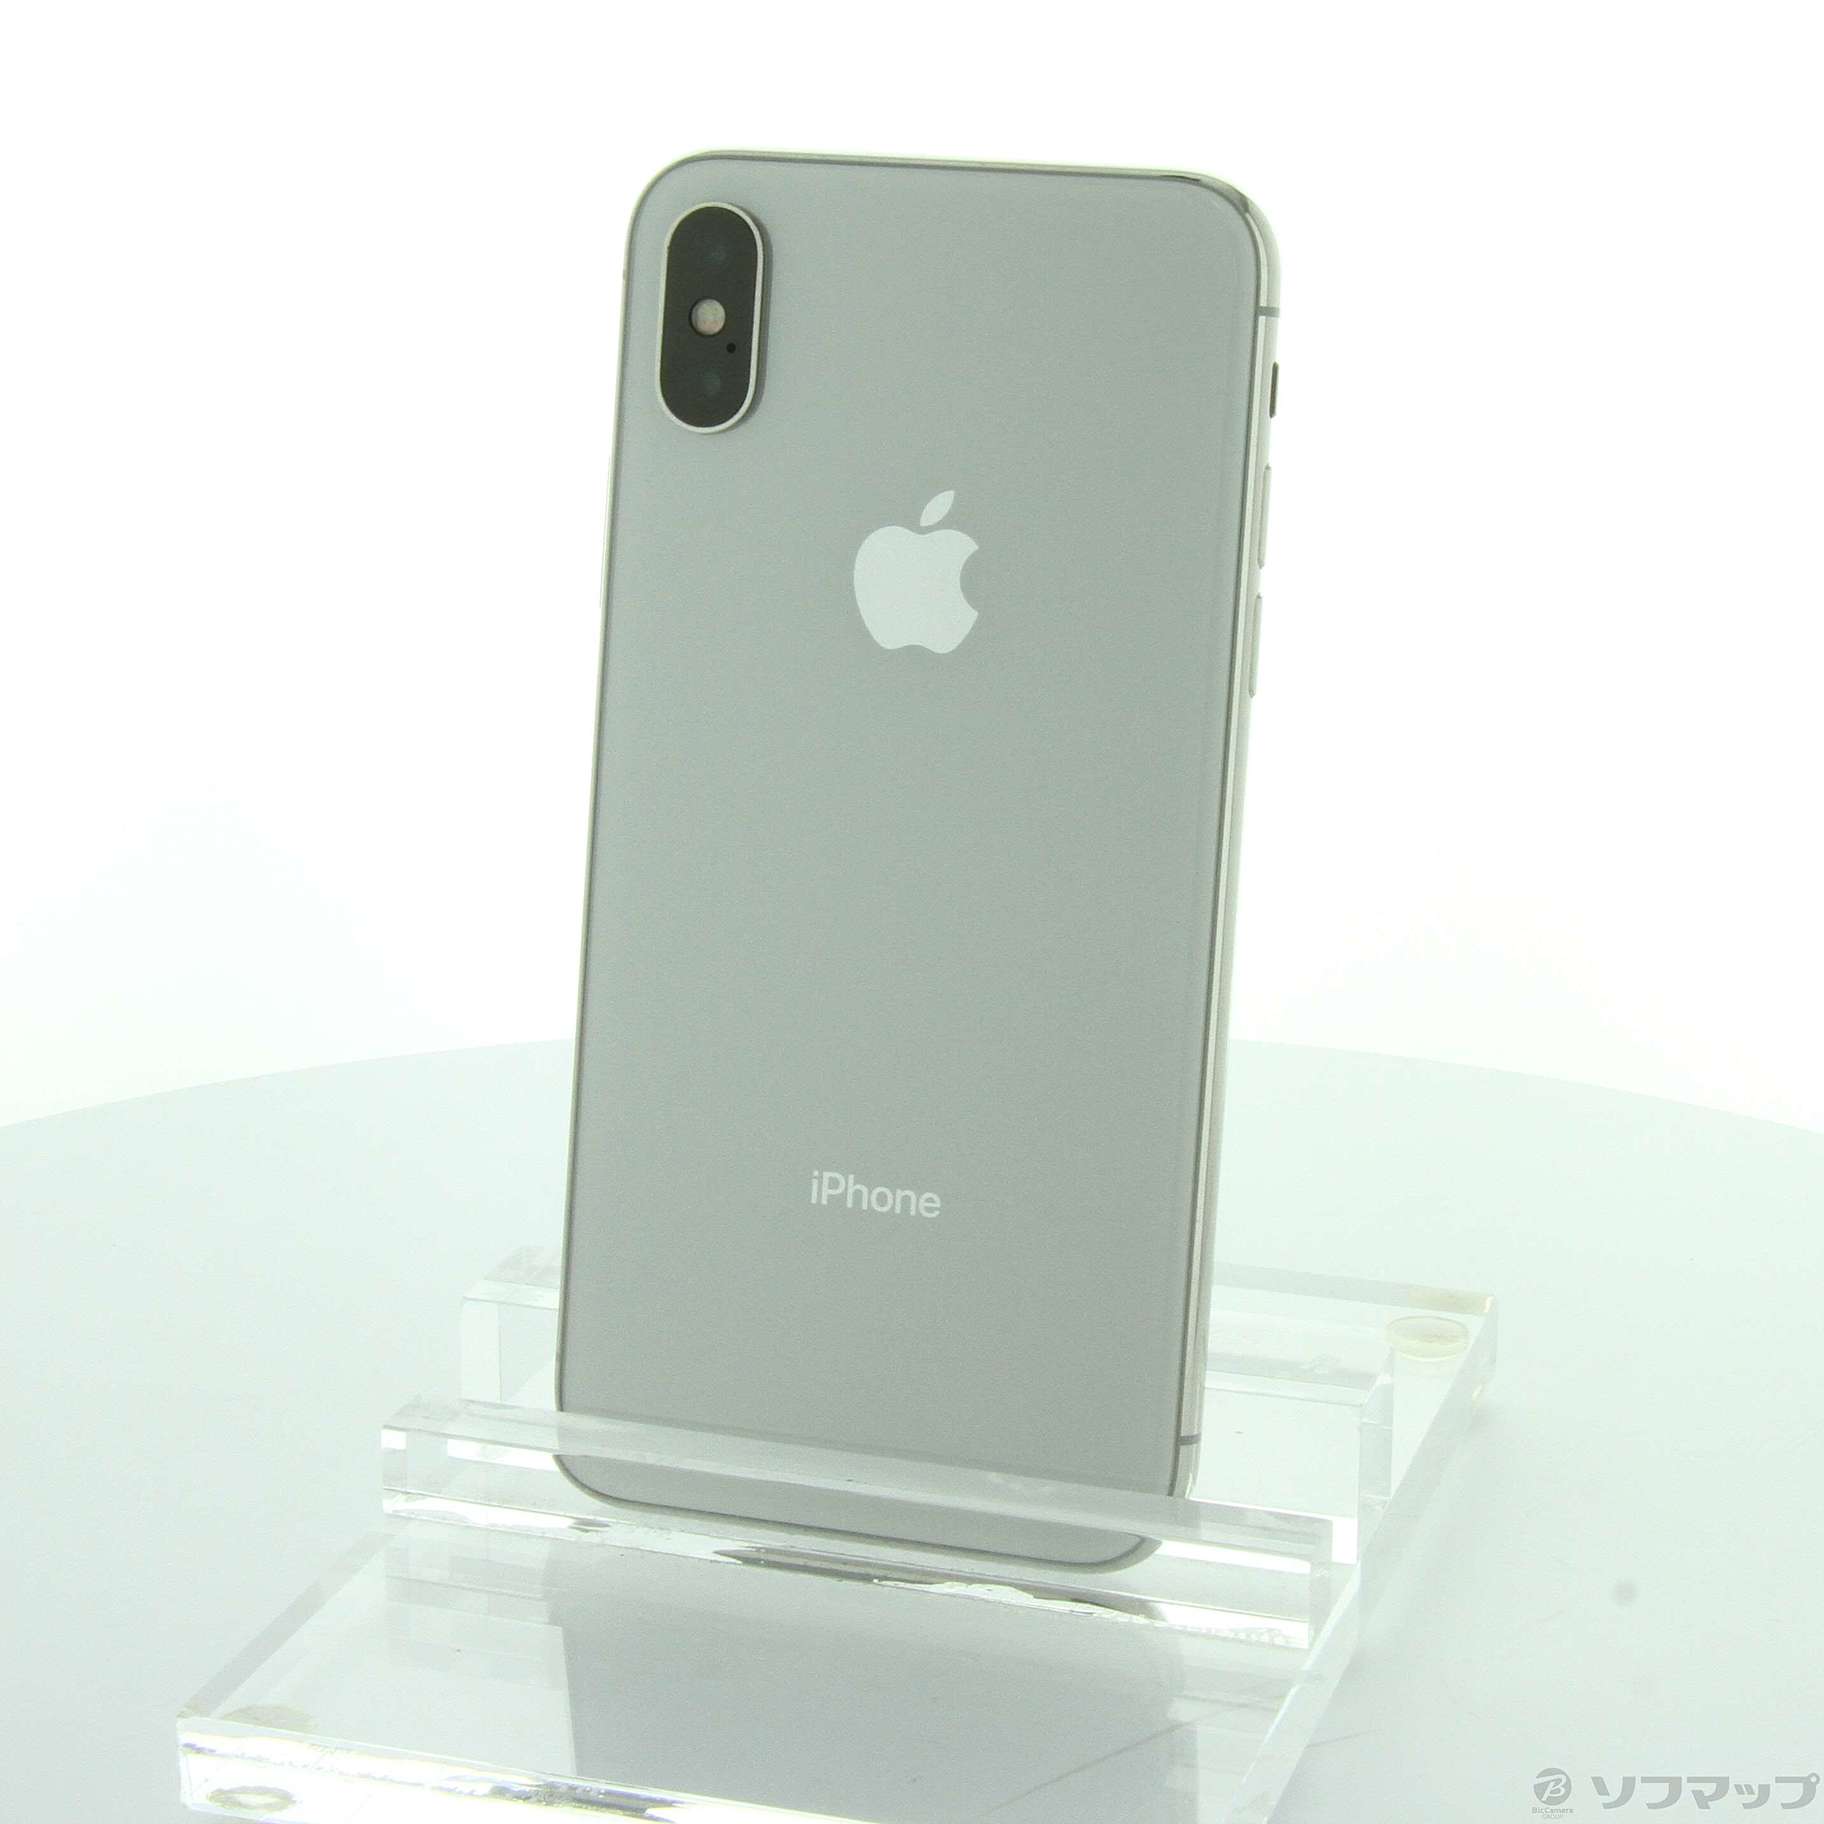 iphoneX 64gb silver simフリー